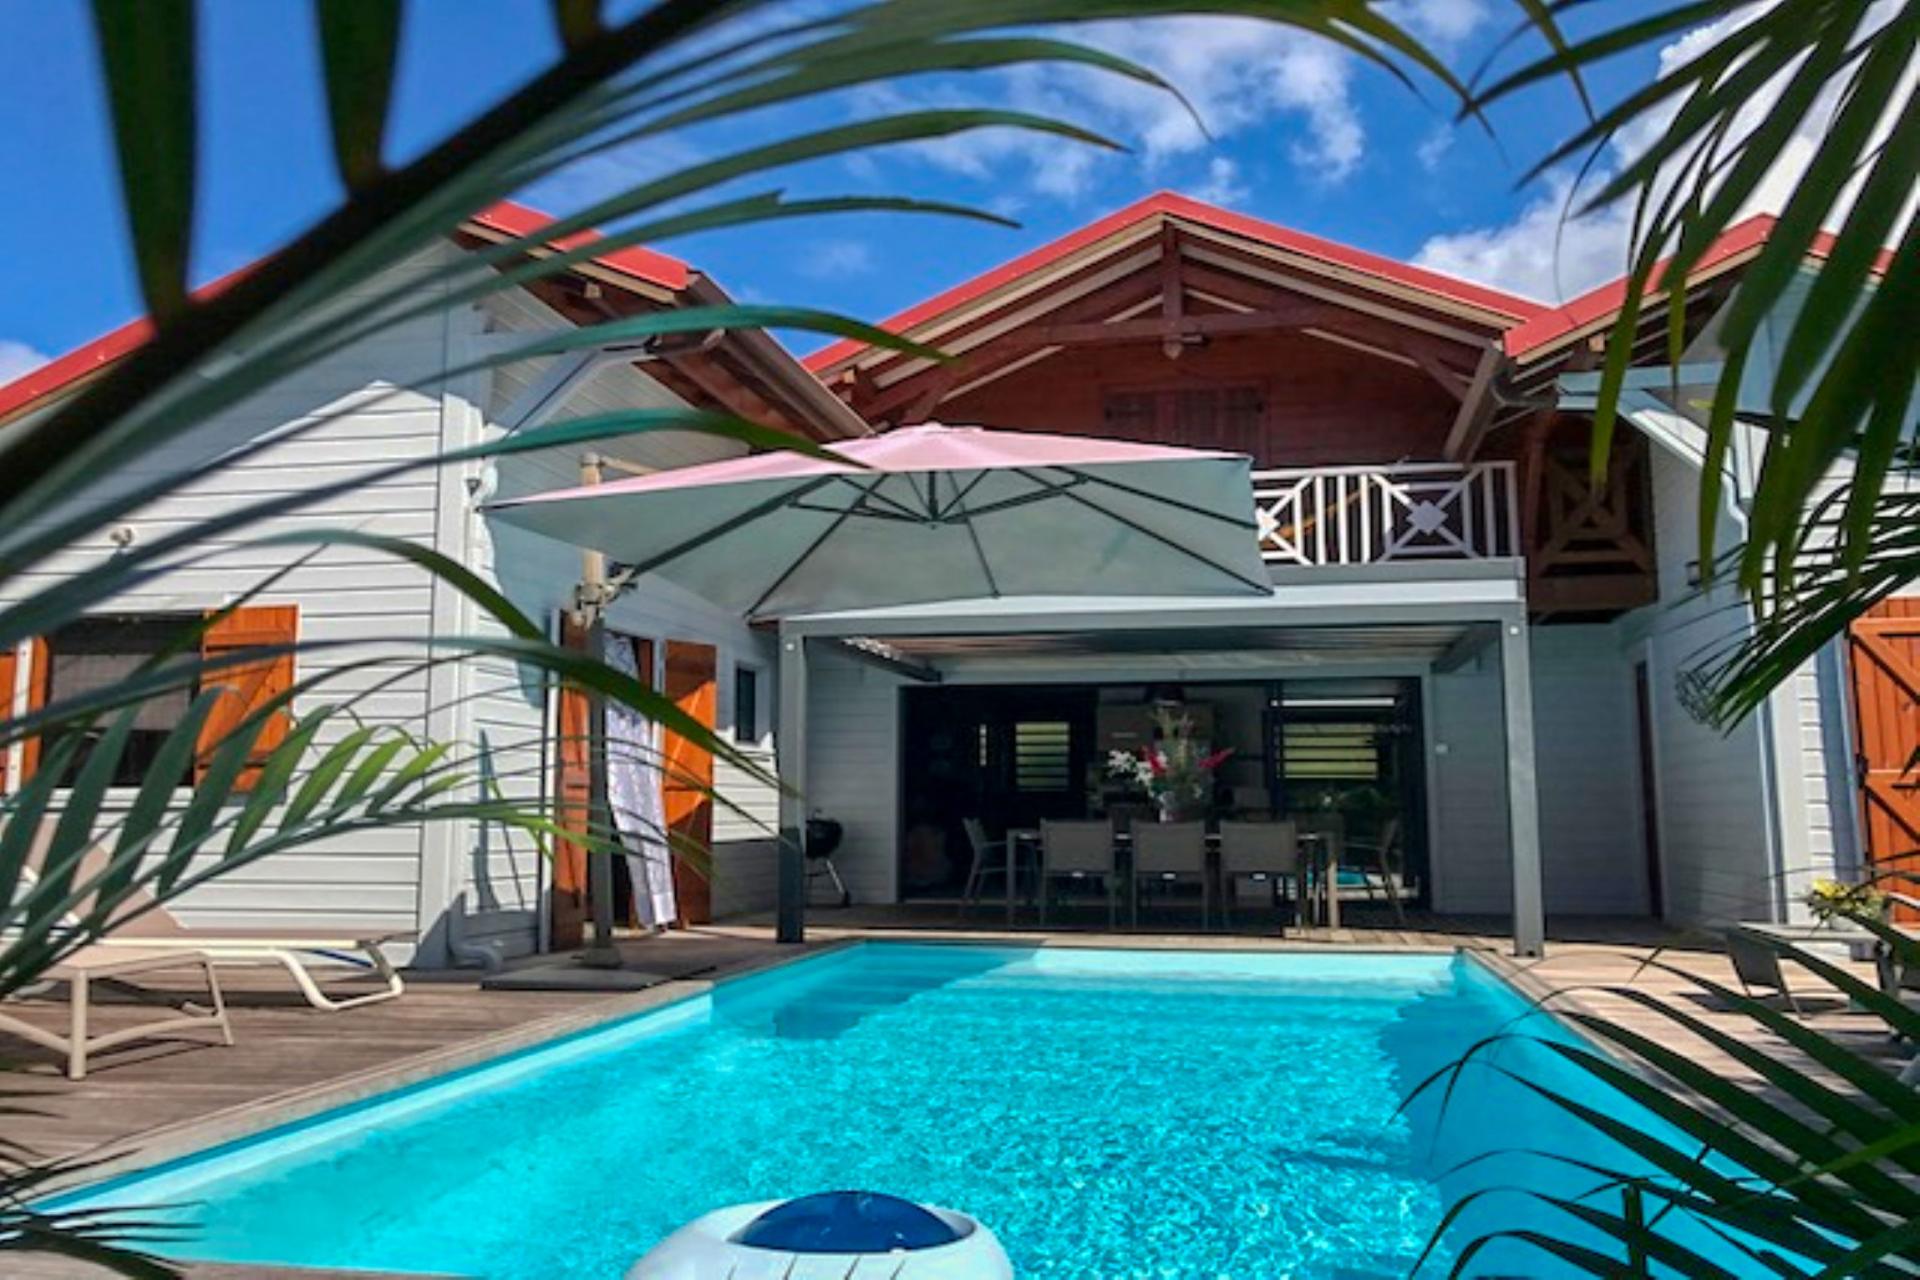 Rental villa Bouillante Guadeloupe - overview